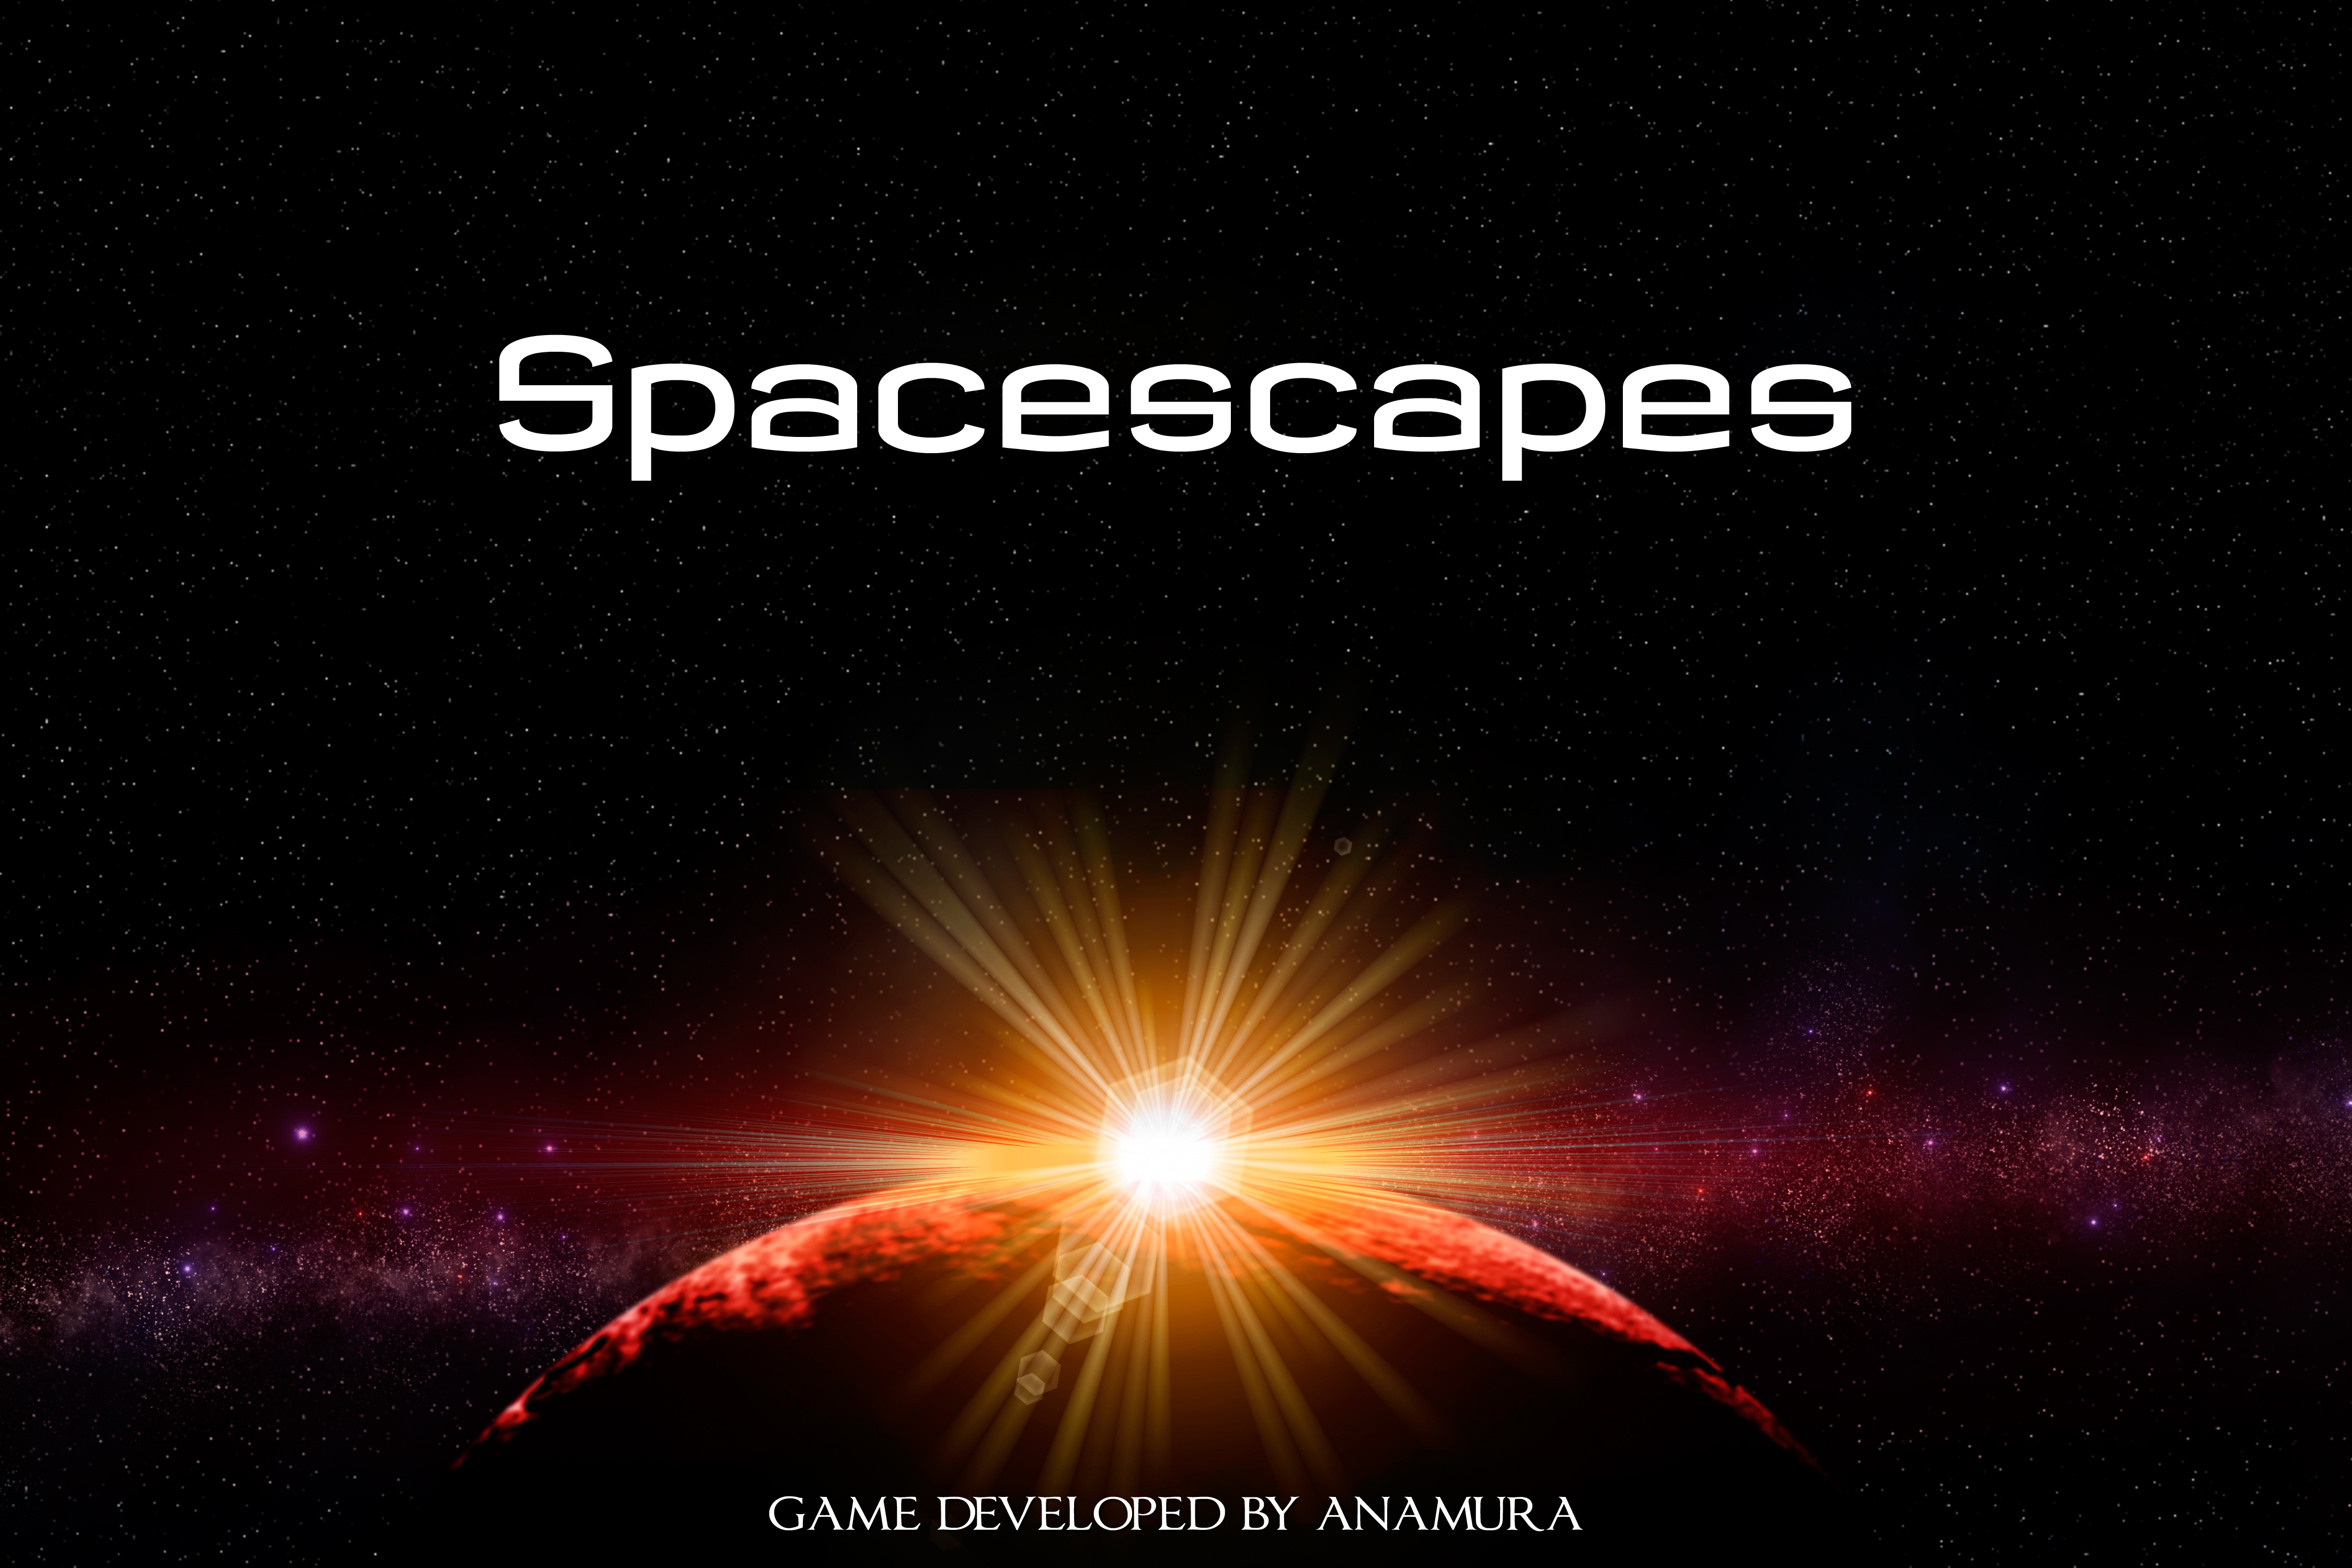 Spacescapes